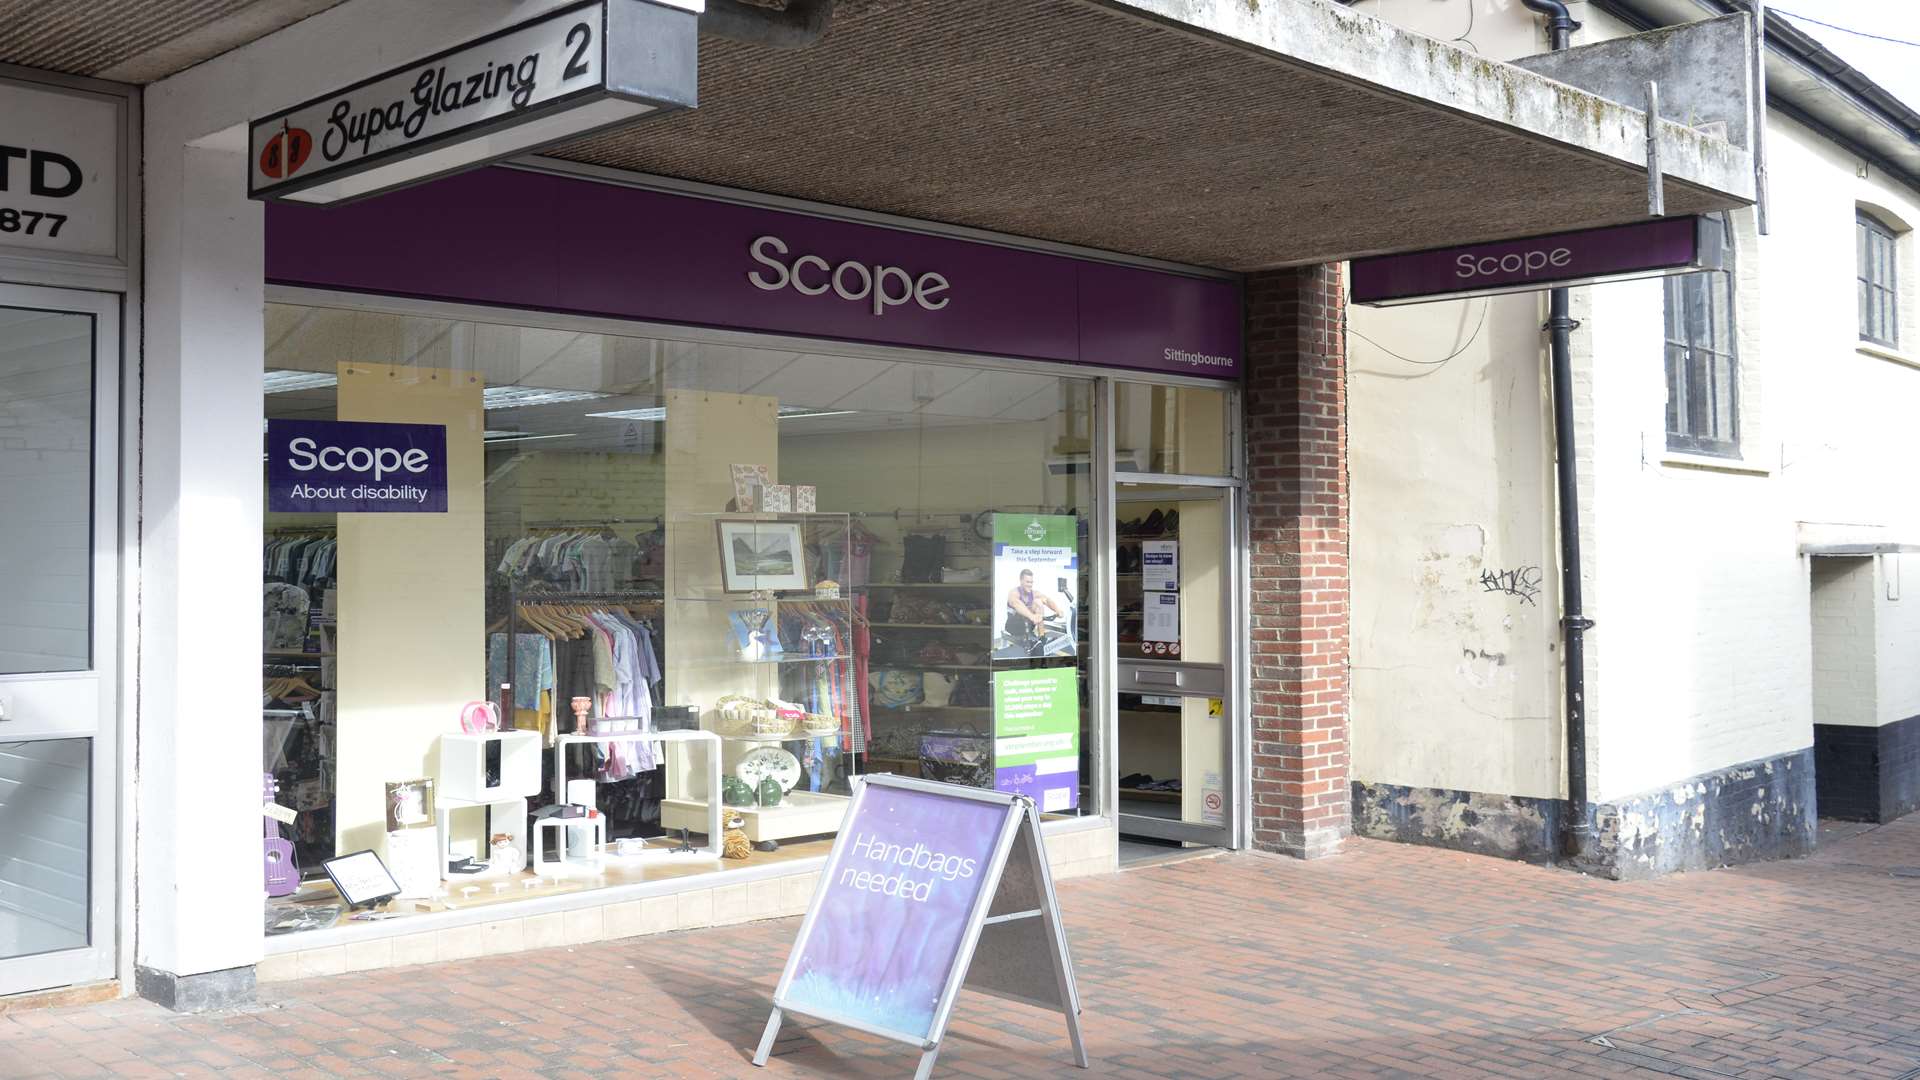 The Scope shop in Roman Square, Sittingbourne.